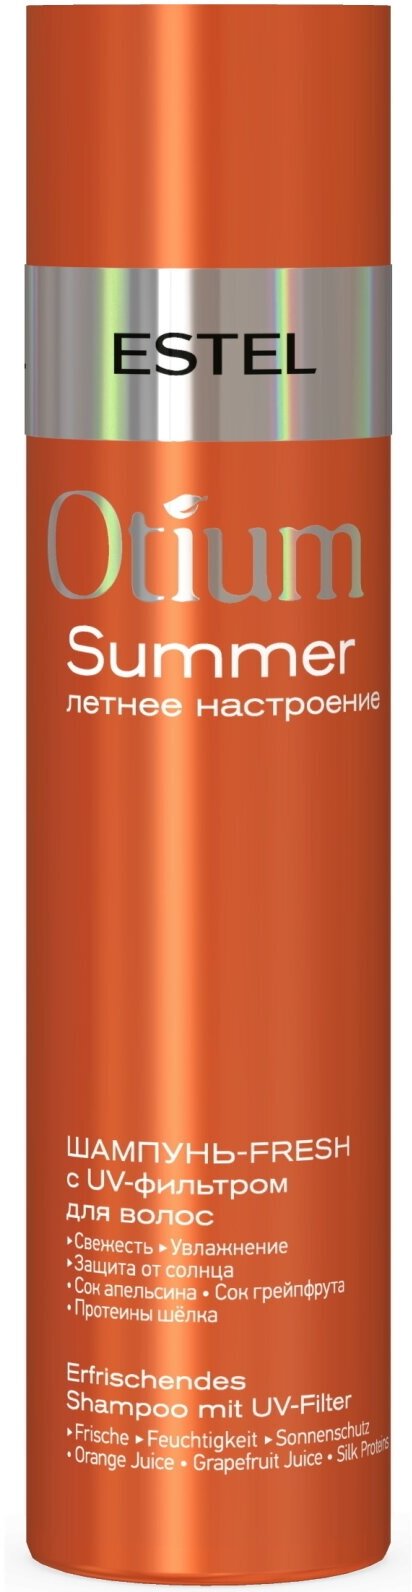 Шампунь-fresh OTIUM SUMMER защита от солнца ESTEL PROFESSIONAL с UV-фильтром для волос 250 мл